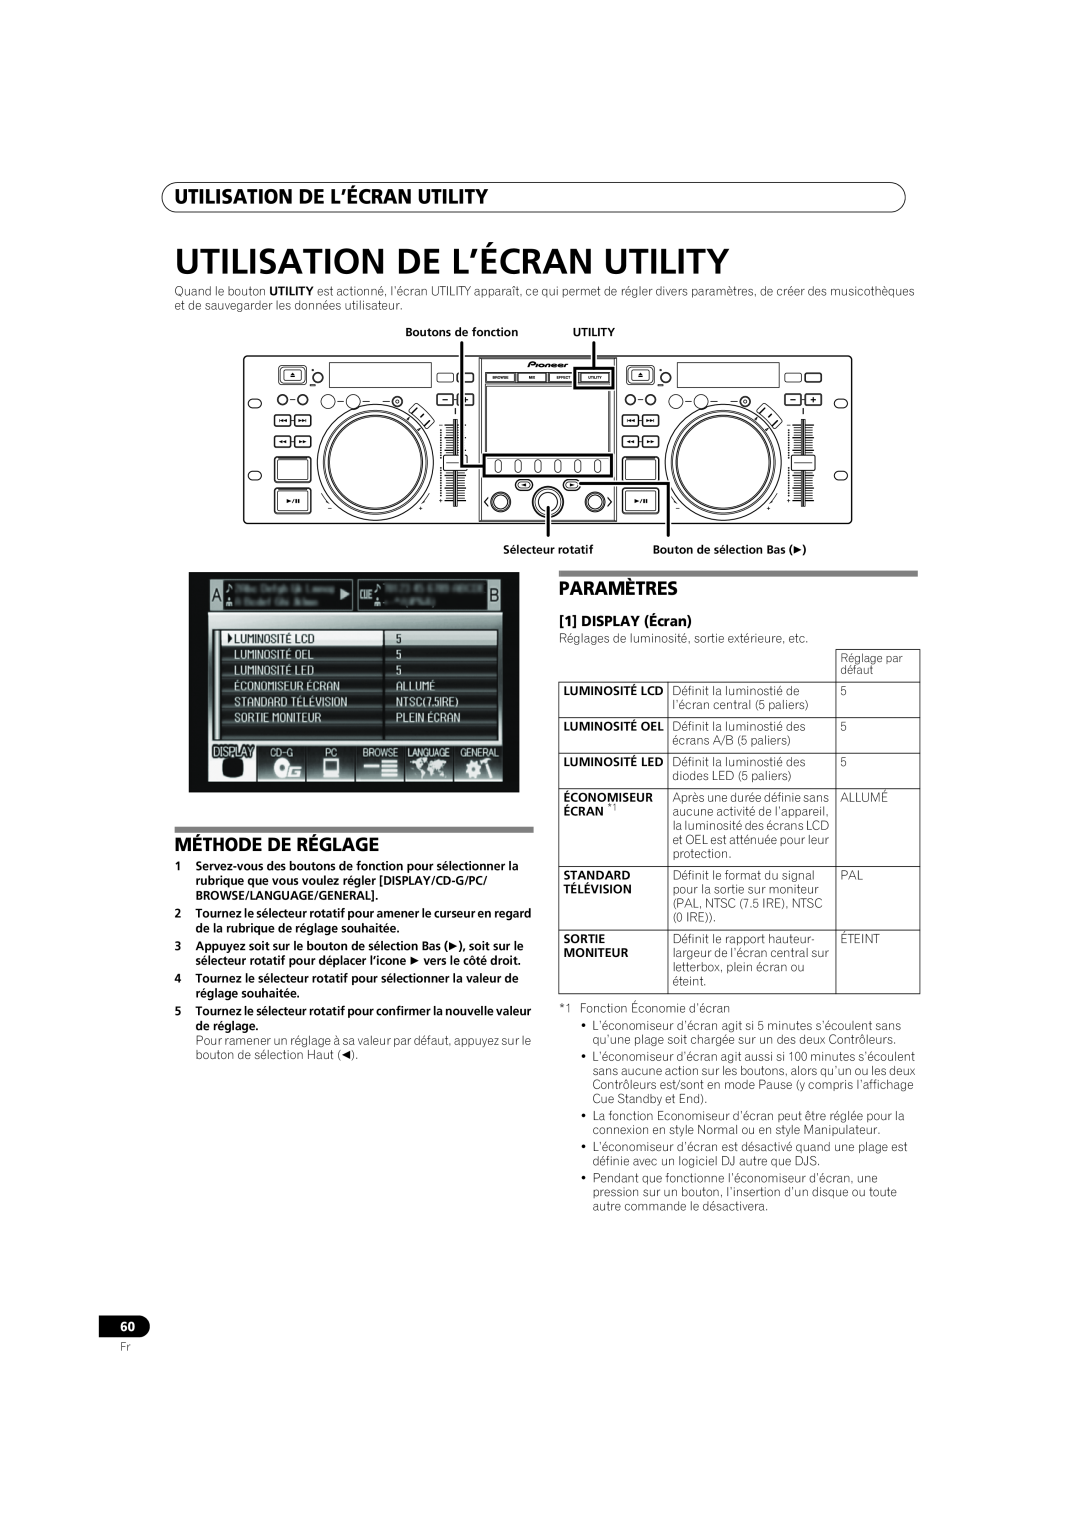 Pioneer MEP-7000 operating instructions Utilisation De L’Écran Utility, Méthode De Réglage, Paramètres 